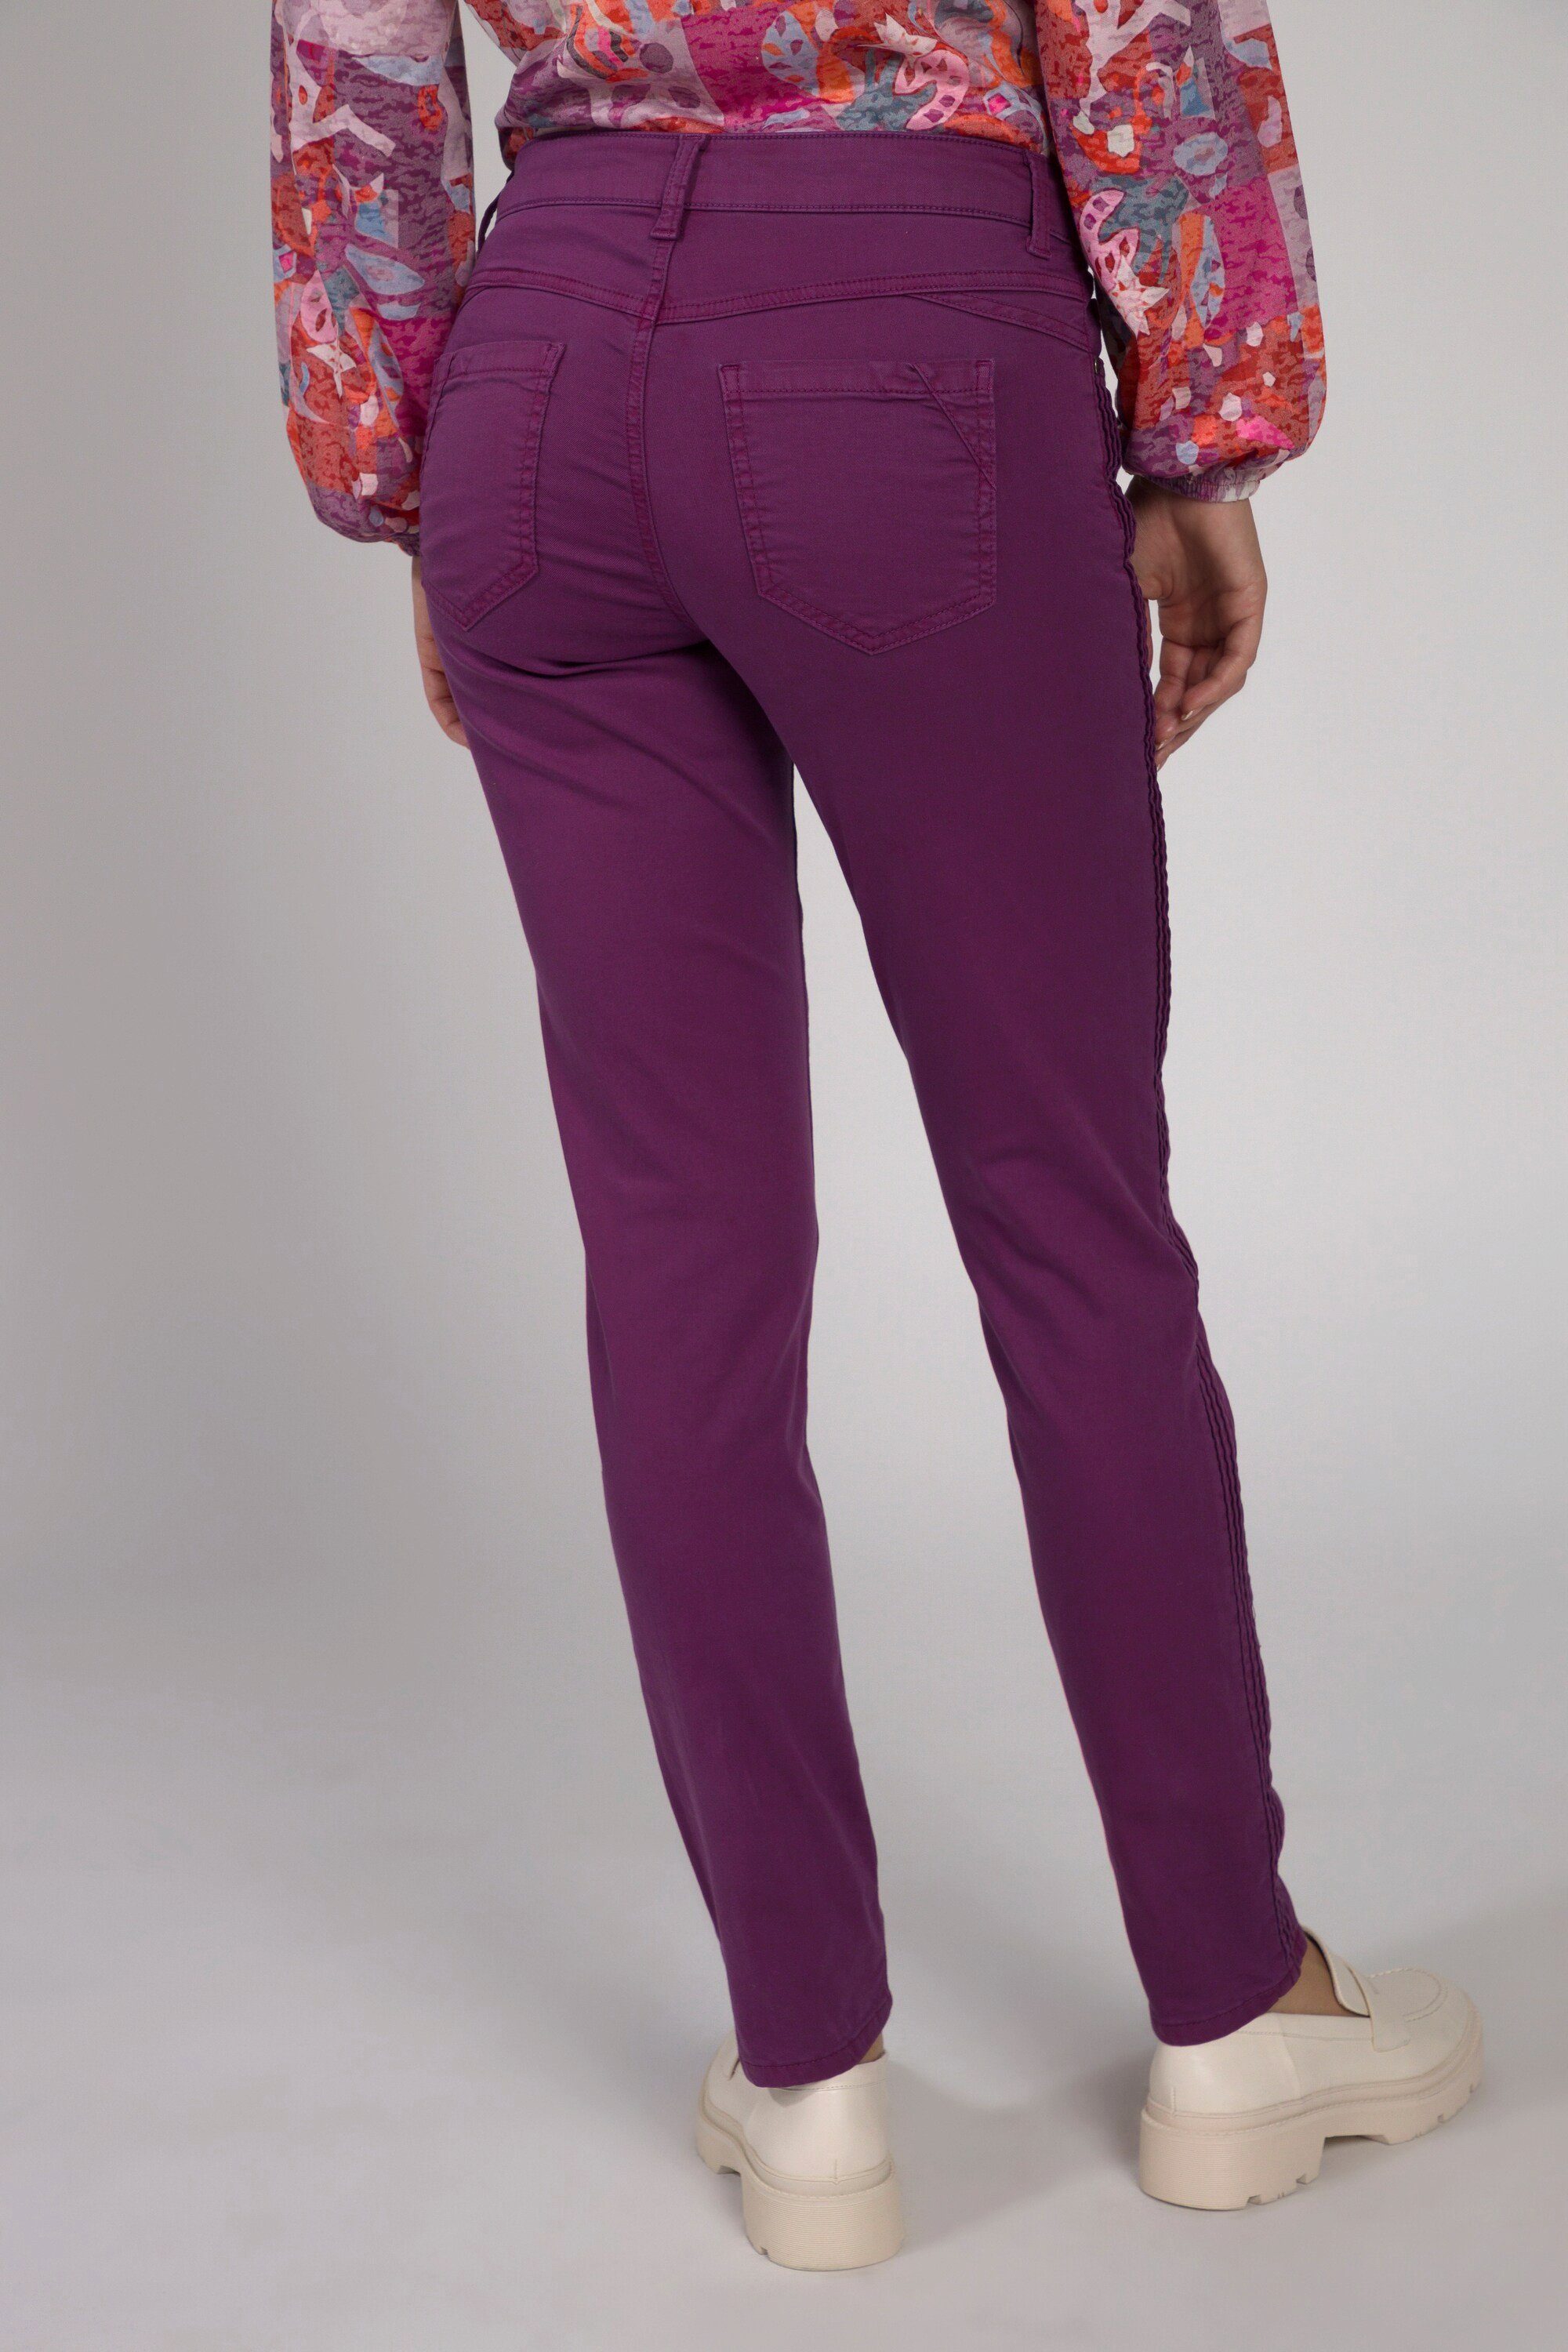 5-Pocket-Form pflaume Stretch-Hose Hose gerade Faltendetail Tina Laura Gina